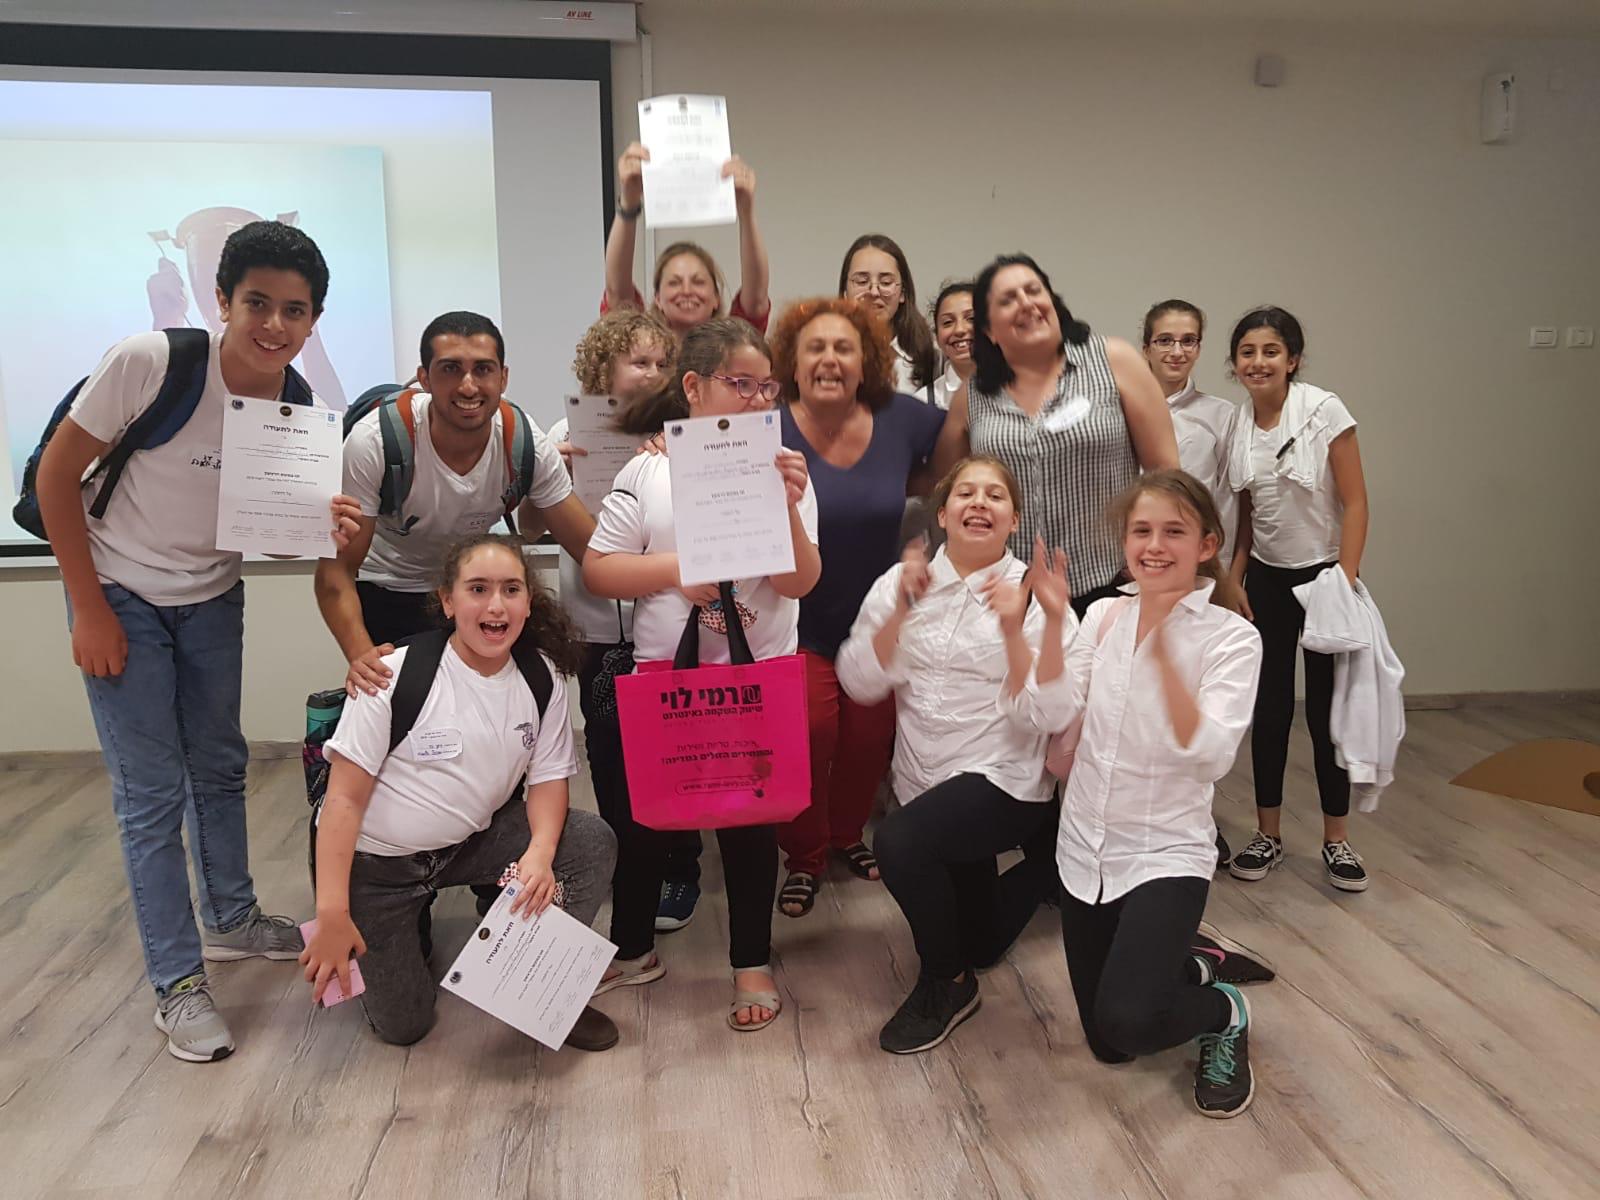 בית החינוך יד לבנים בפתח תקוה זכה במקום הראשון בתחרות היזמות "ת'זיז את עצמך -2019".